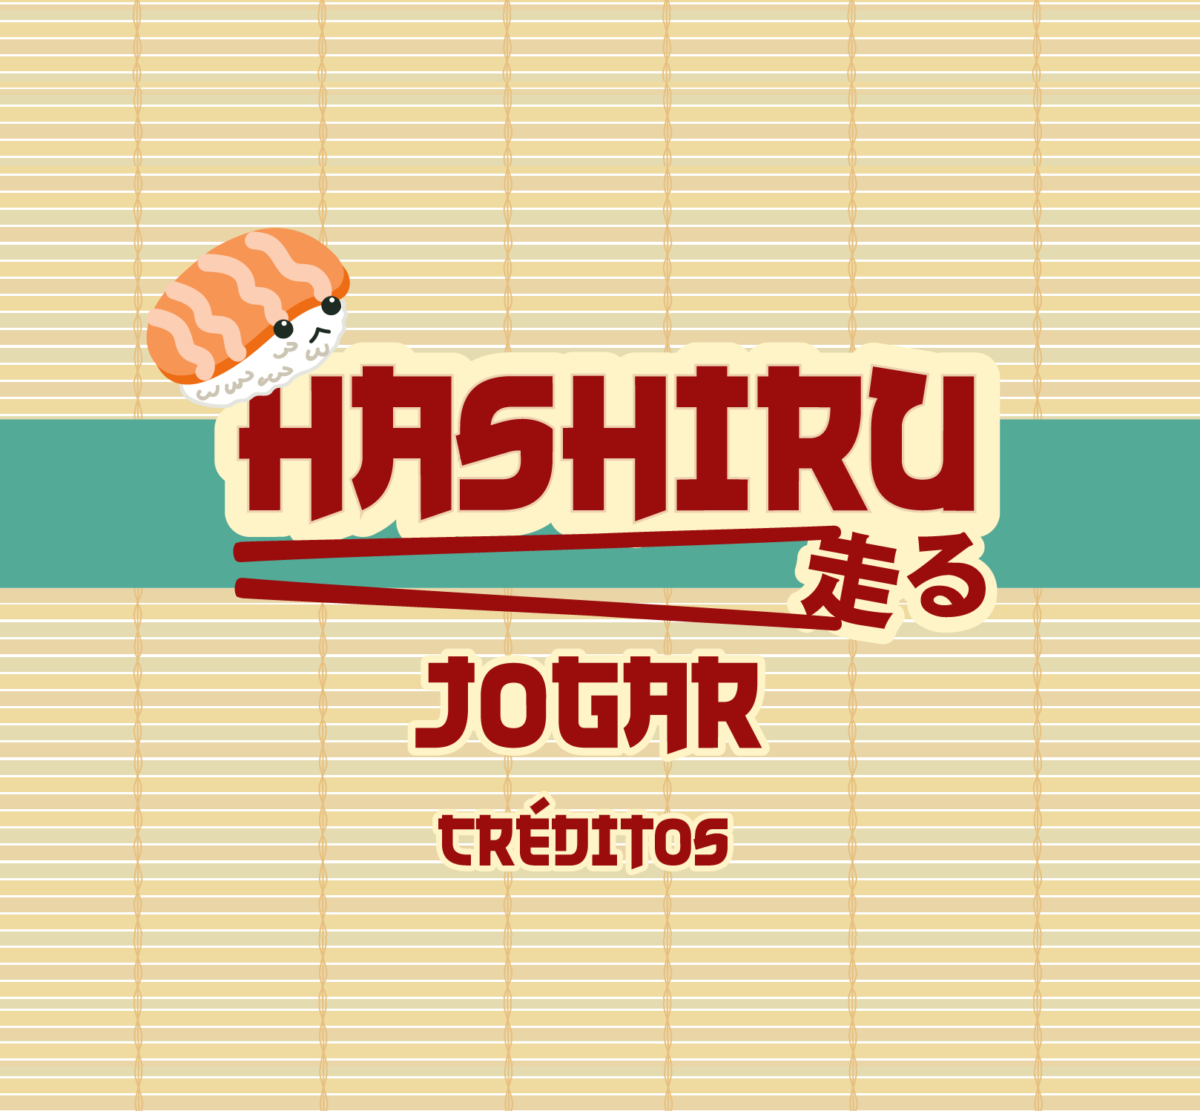 Capa do Projeto - Hashiru